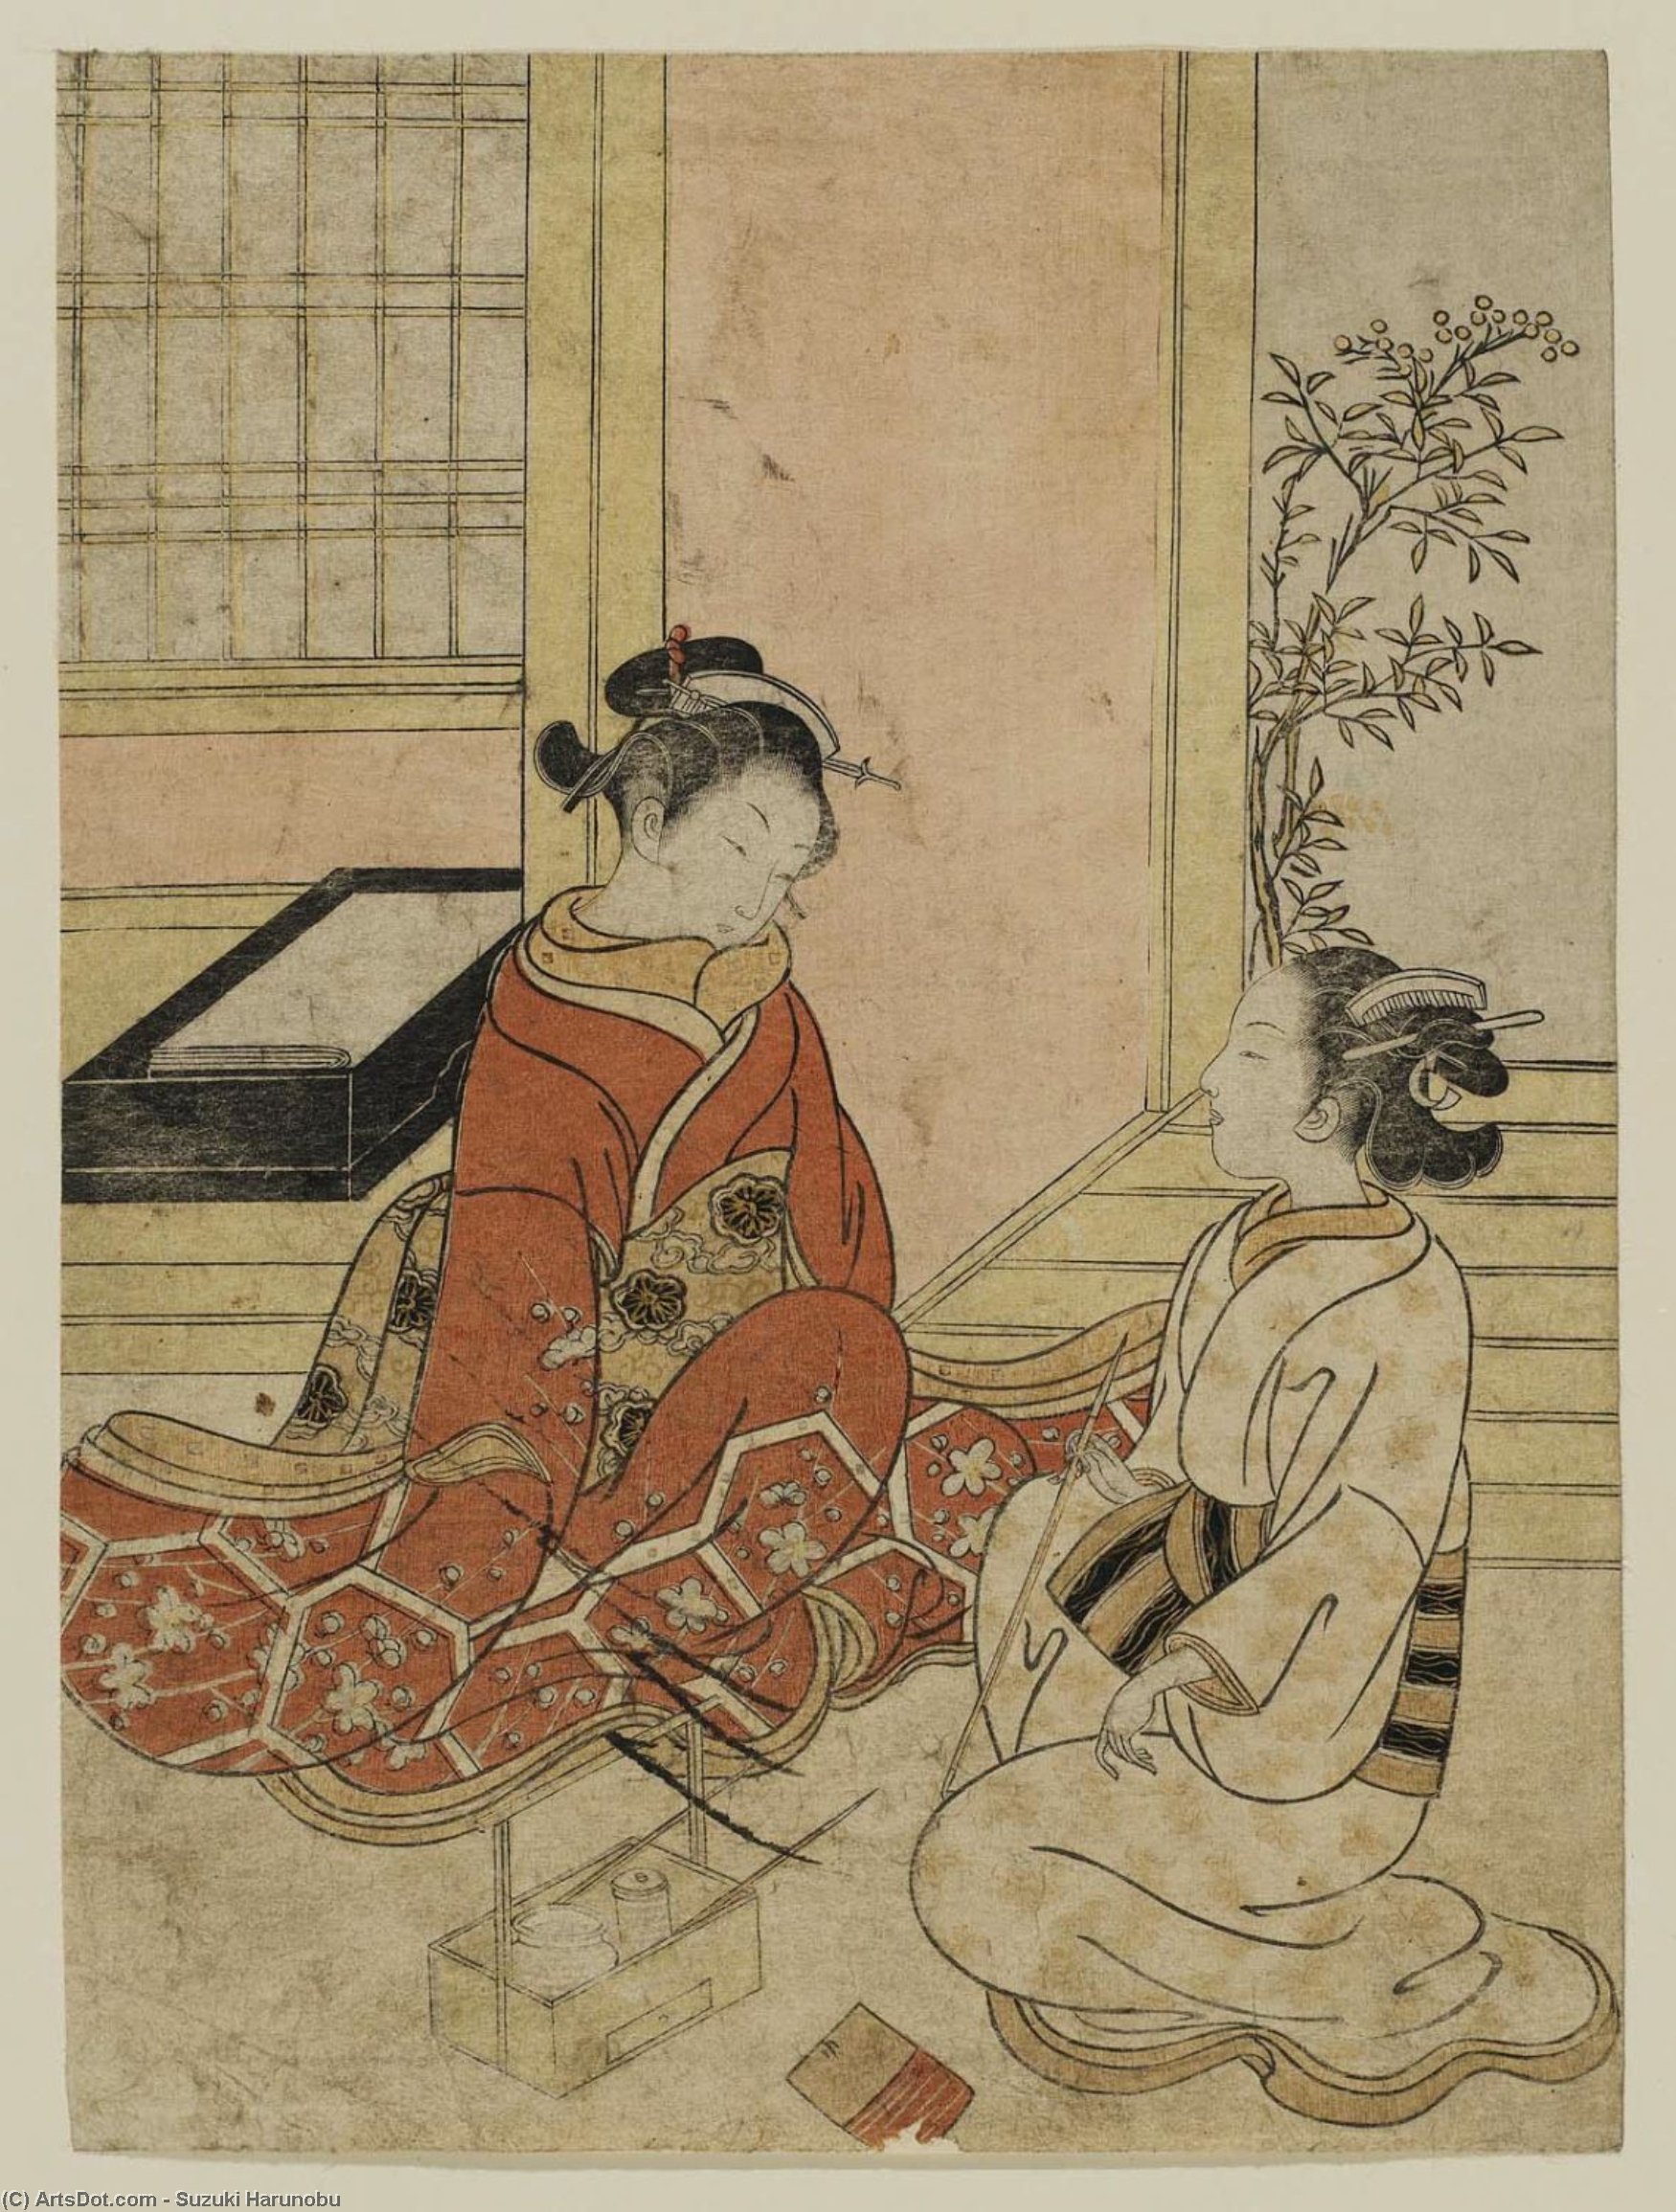 WikiOO.org - Εγκυκλοπαίδεια Καλών Τεχνών - Ζωγραφική, έργα τέχνης Suzuki Harunobu - Two Women In Conversation